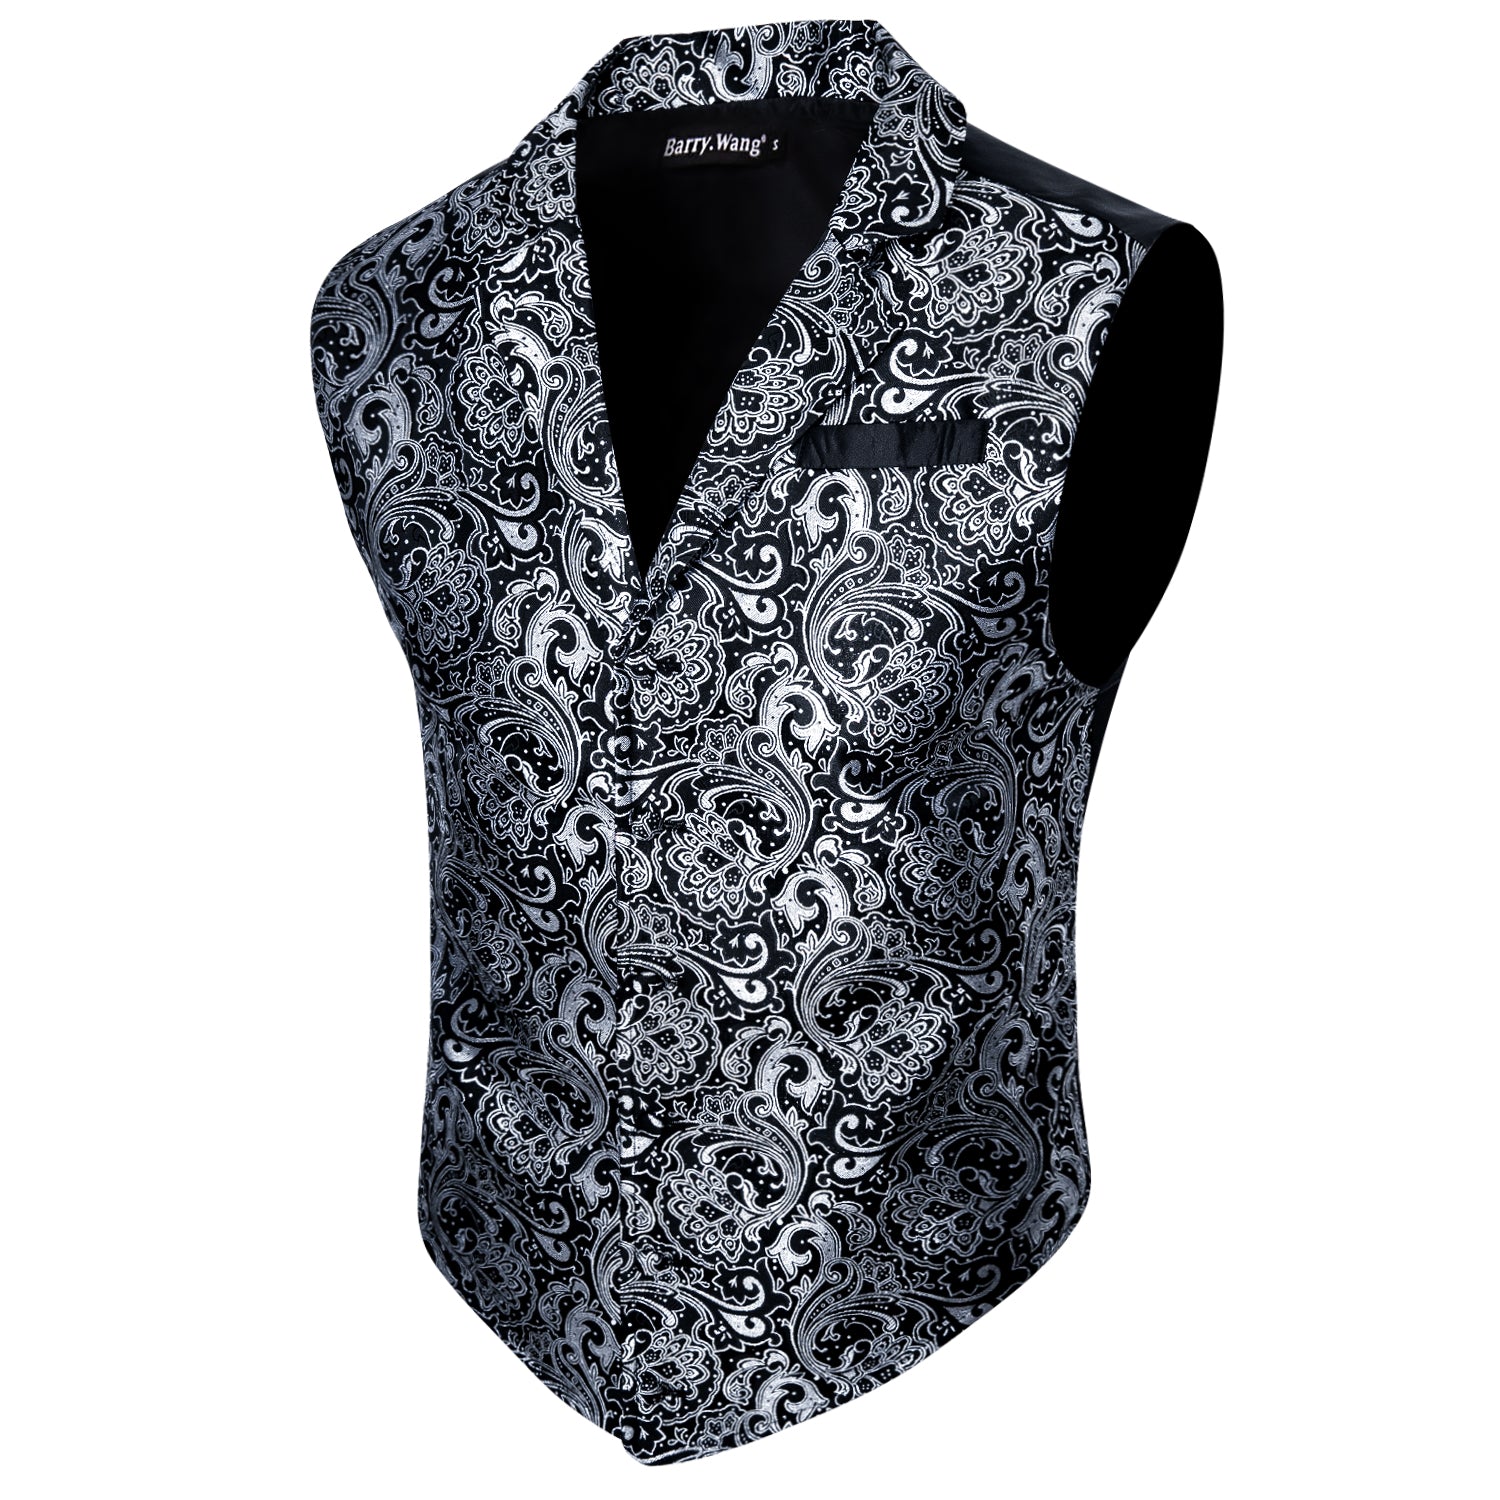 Barry.wang Men's Vest Black White Jacquard Floral Silk Waistcoat Vest